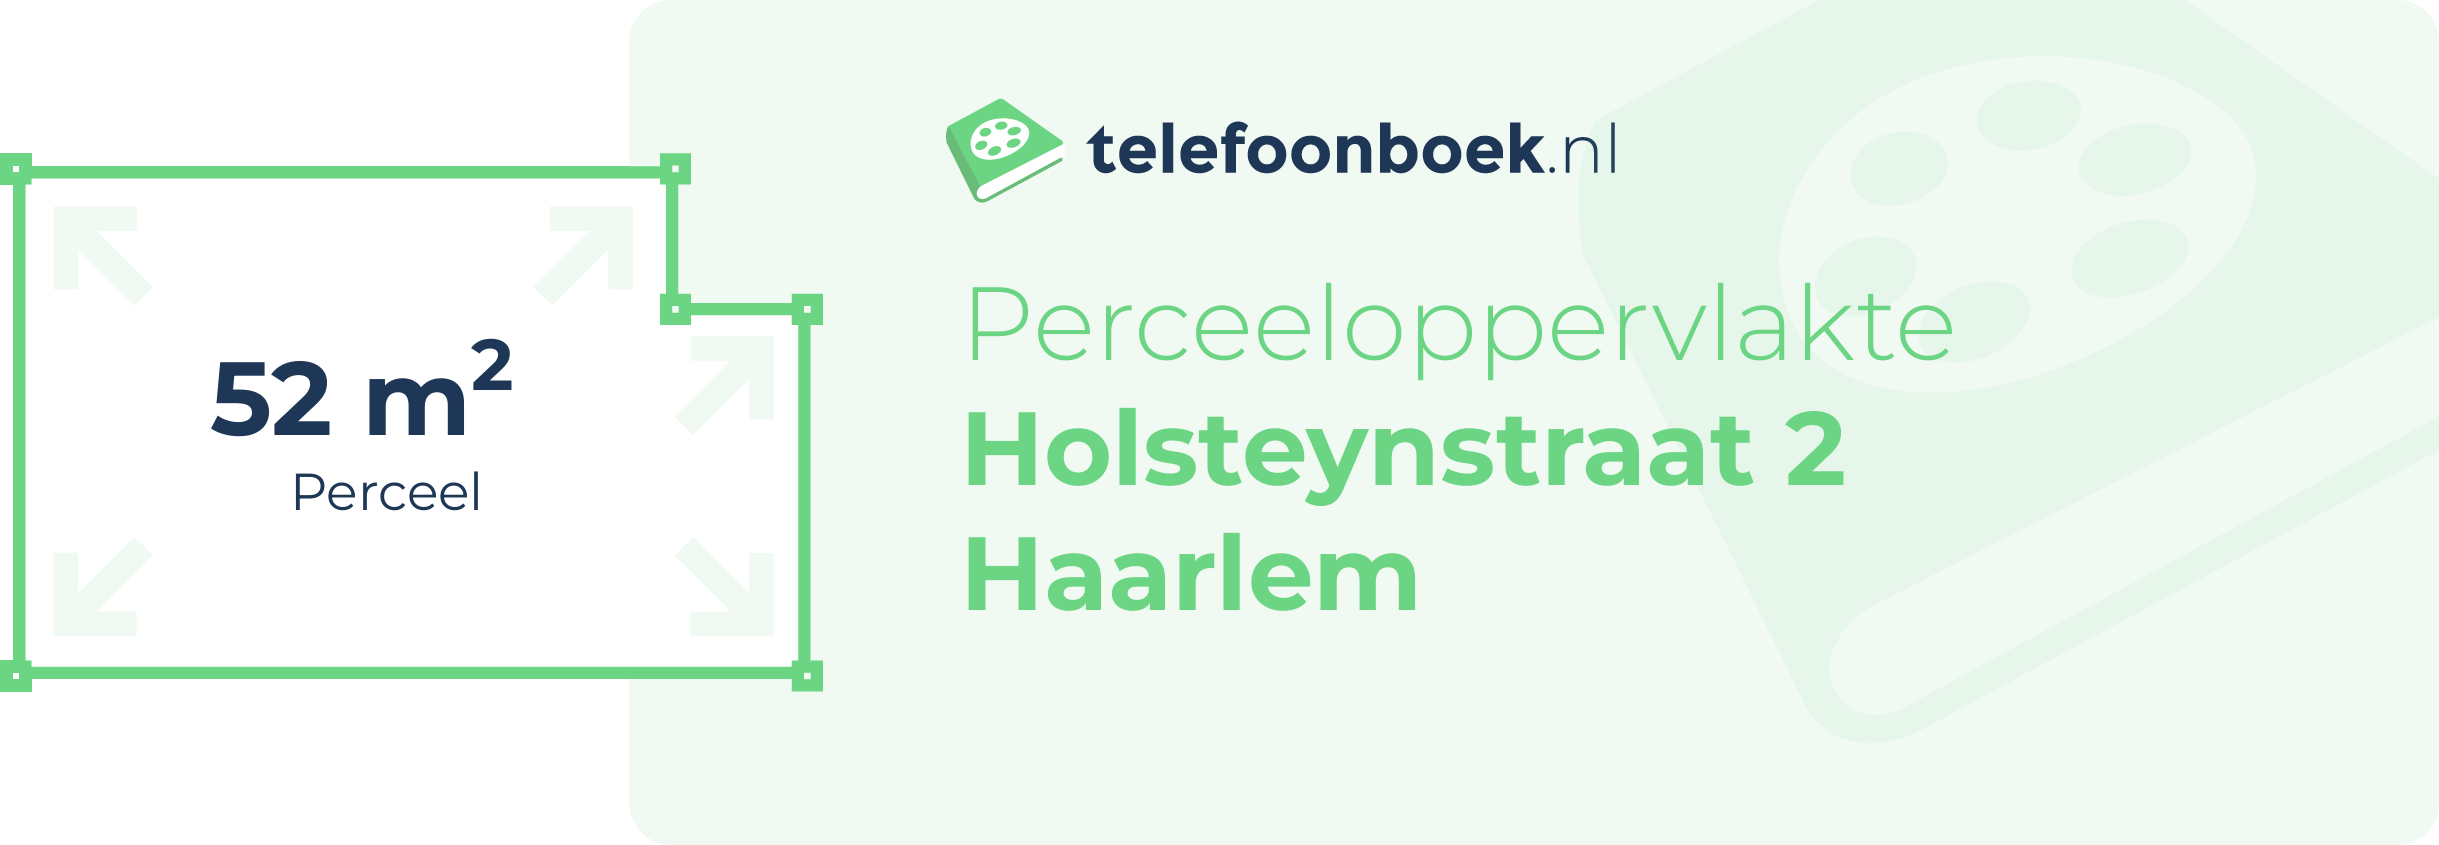 Perceeloppervlakte Holsteynstraat 2 Haarlem